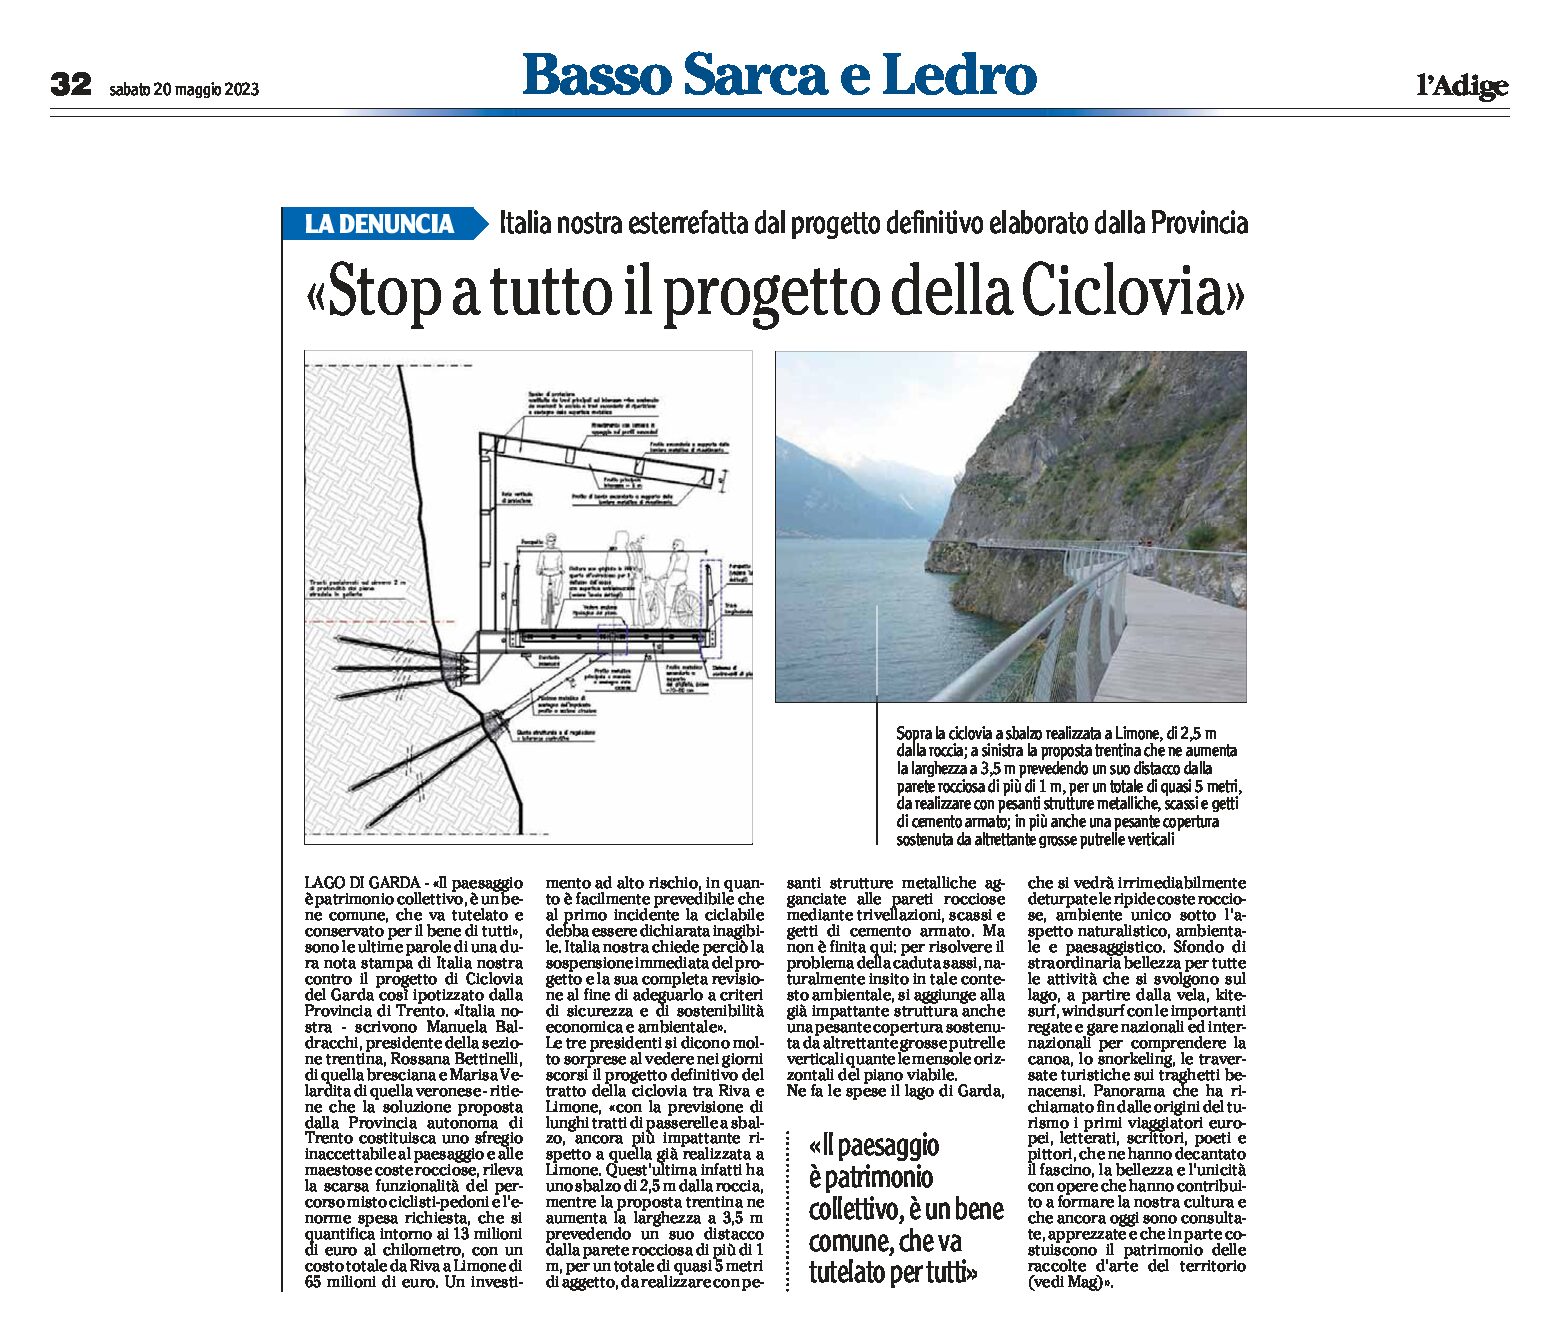 Ciclovia del Garda: Italia Nostra esterrefatta “stop a tutto il progetto della ciclovia”